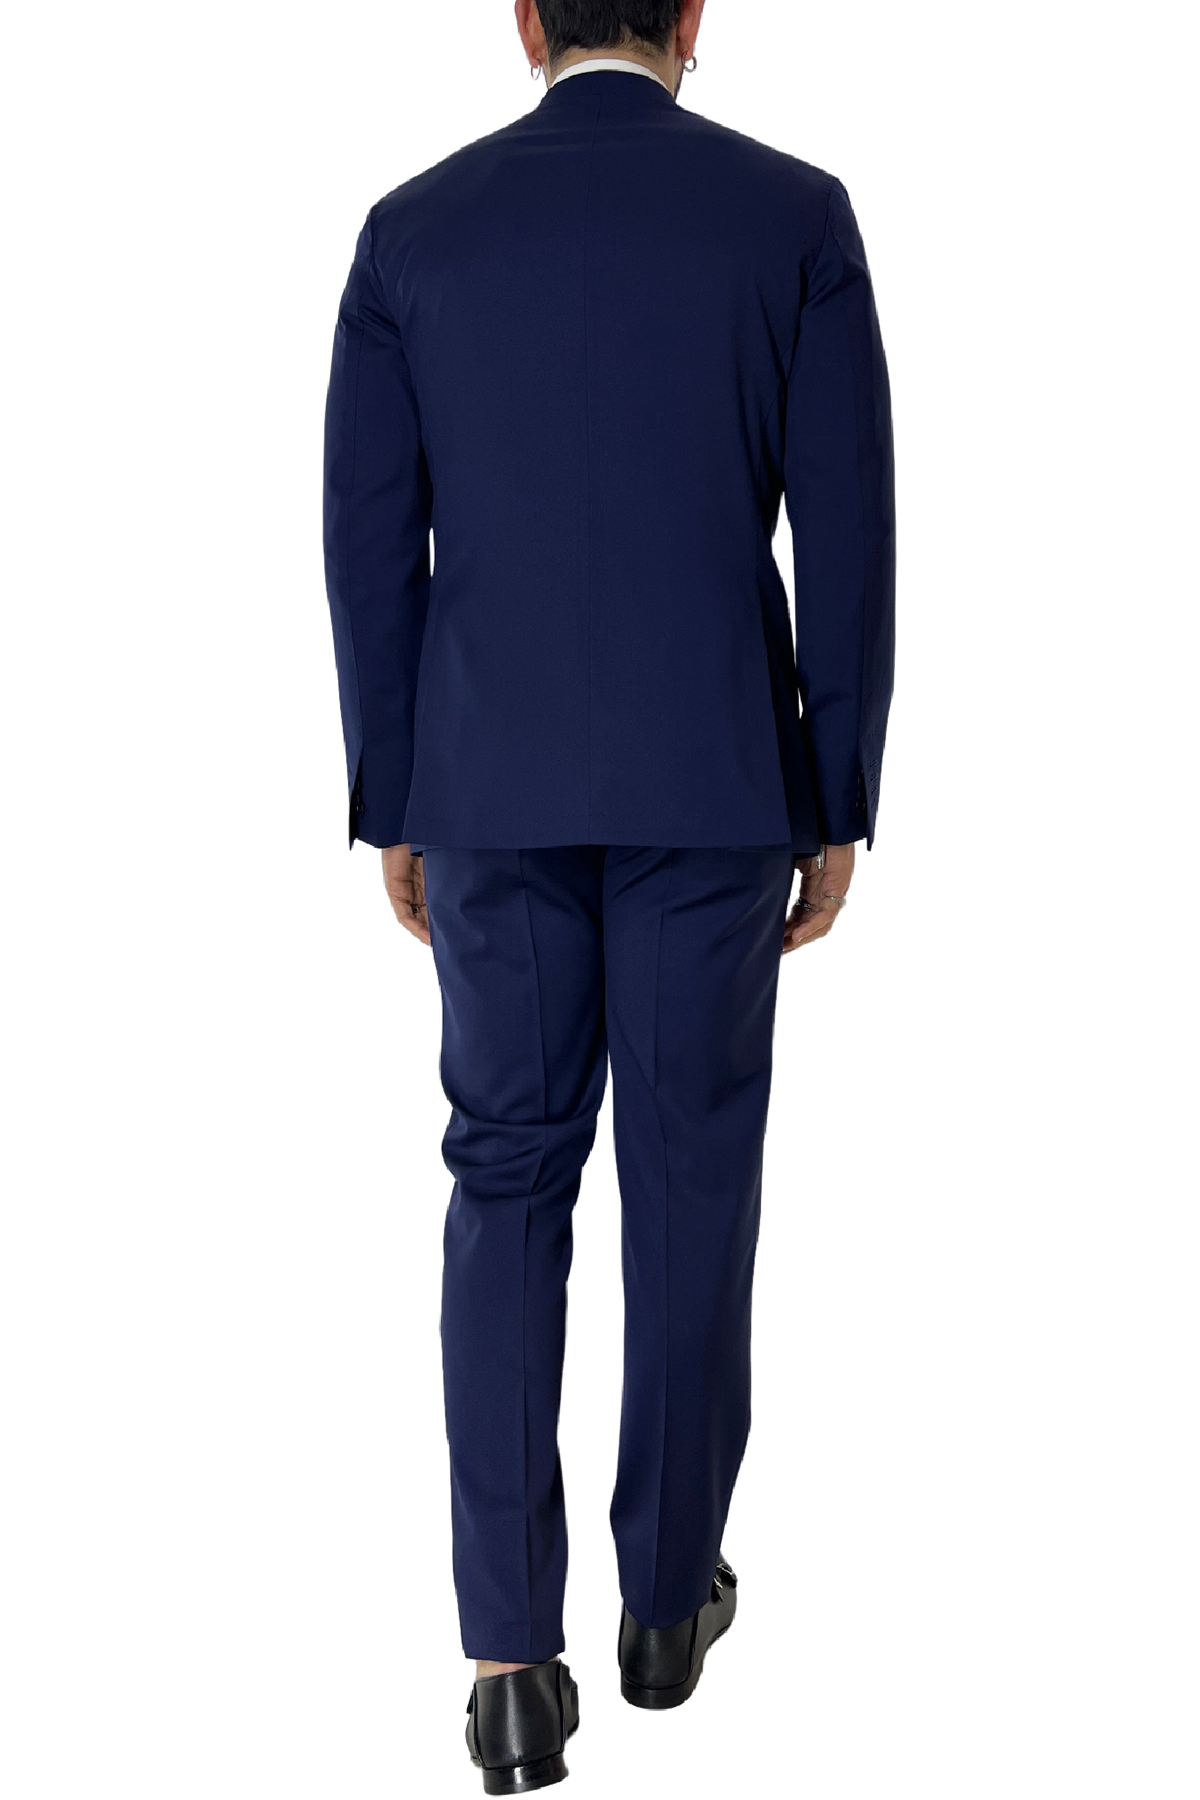 Abito uomo con giacca monopetto blu royal rever a lancia e pantalone tasca america in fresco lana 100% Vitale Barberis Canonico